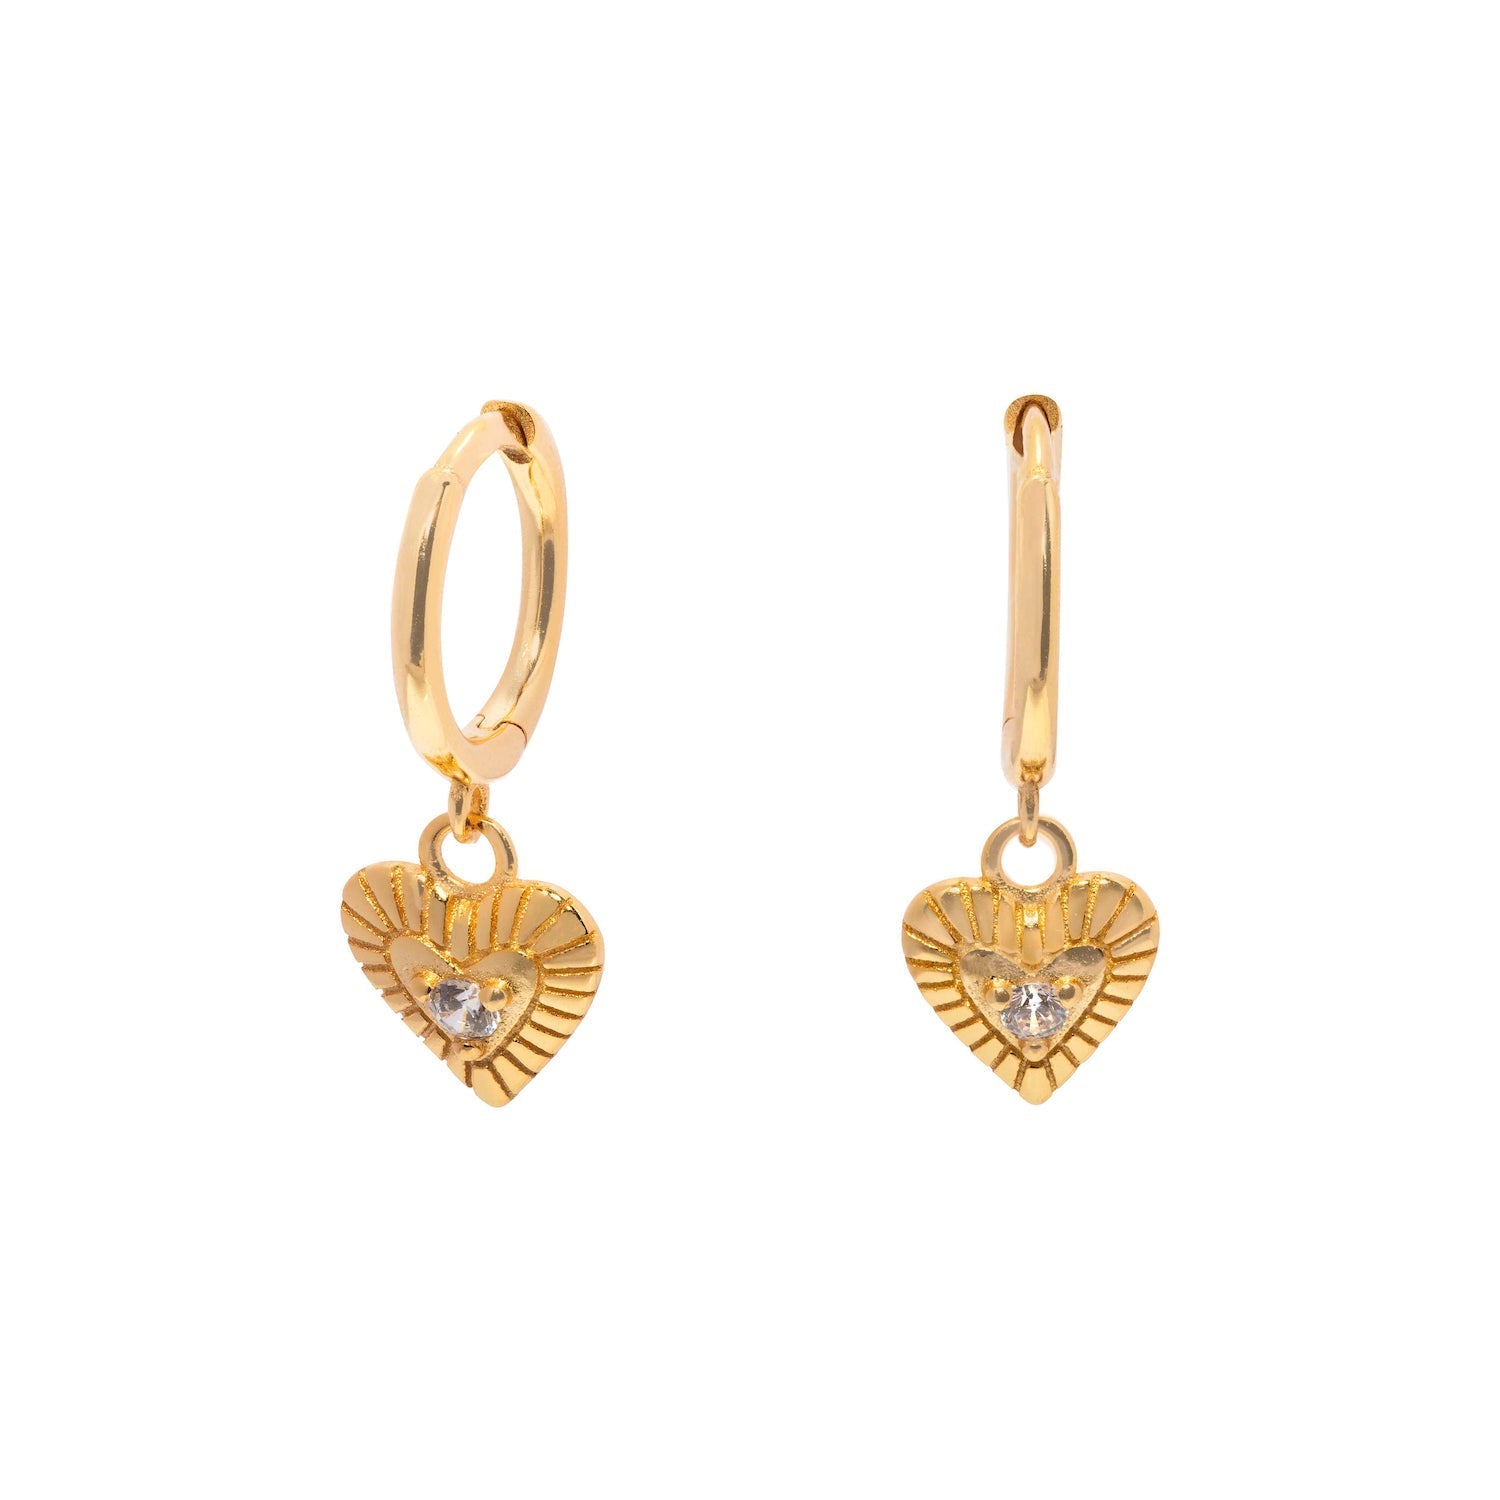 Duo Jewellery Earrings Yellow Gold Love Heart Drop Earrings